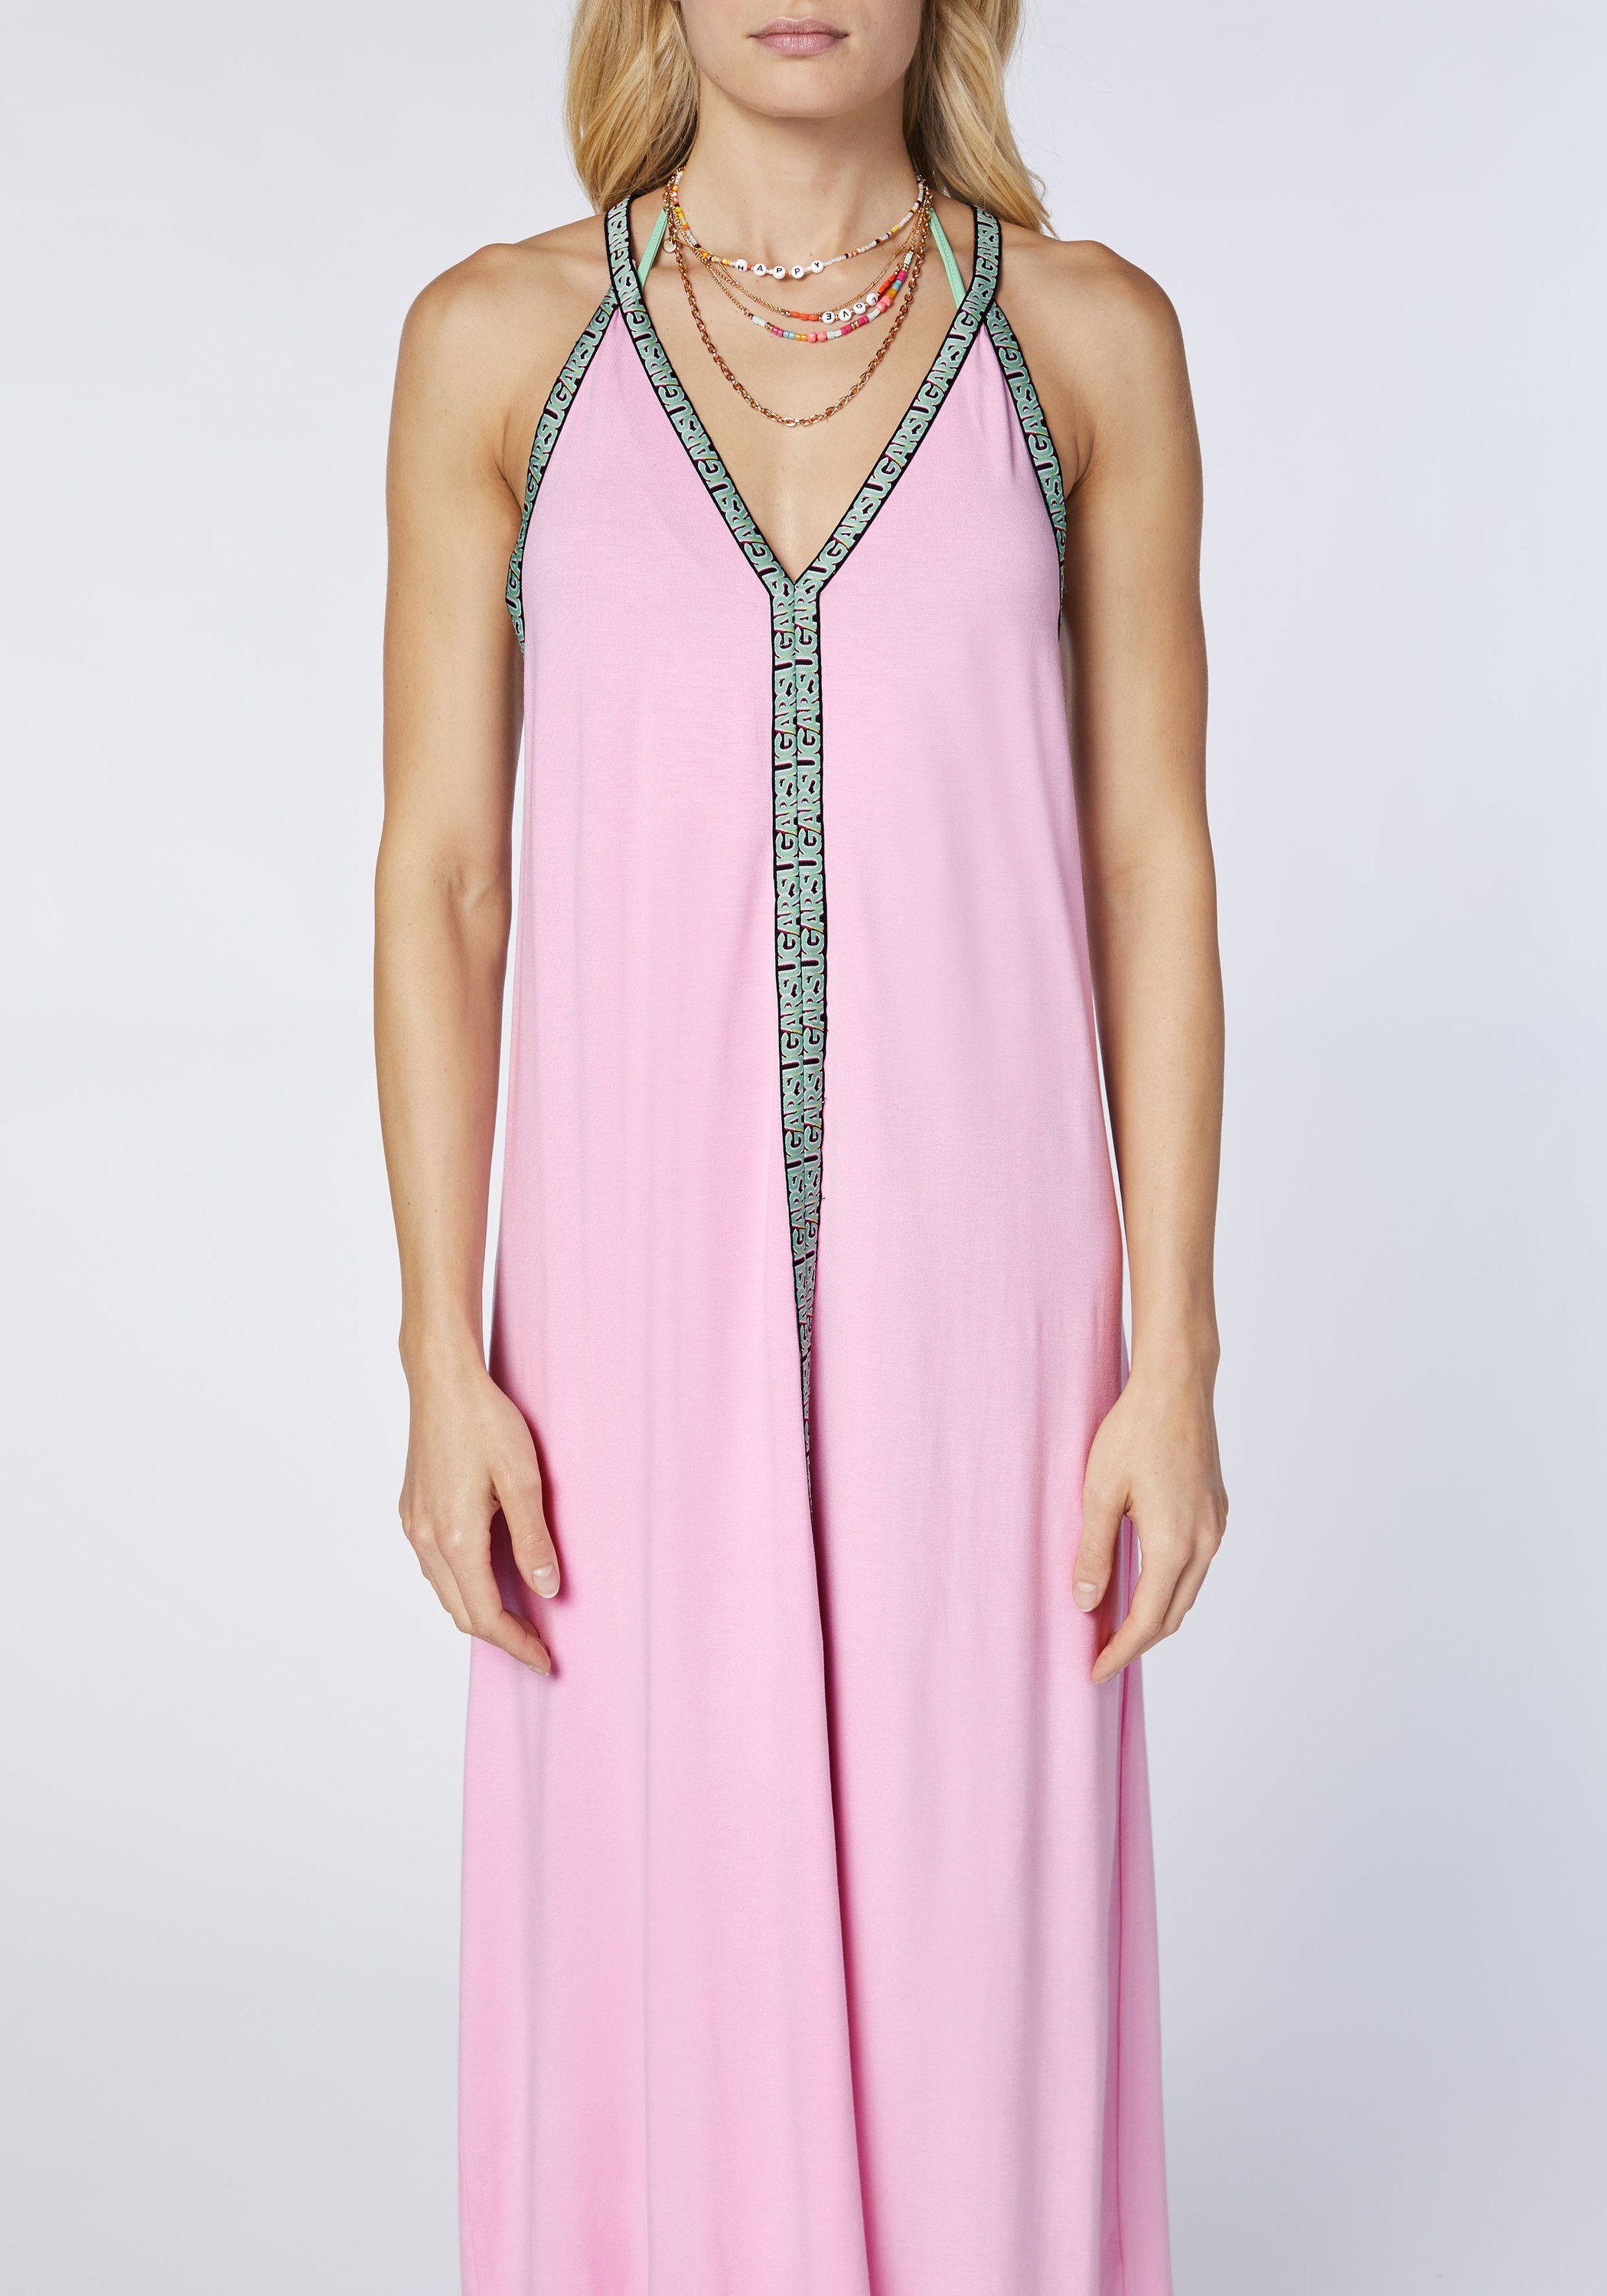 Chiemsee Maxikleid Kleid Prism Langes Pink